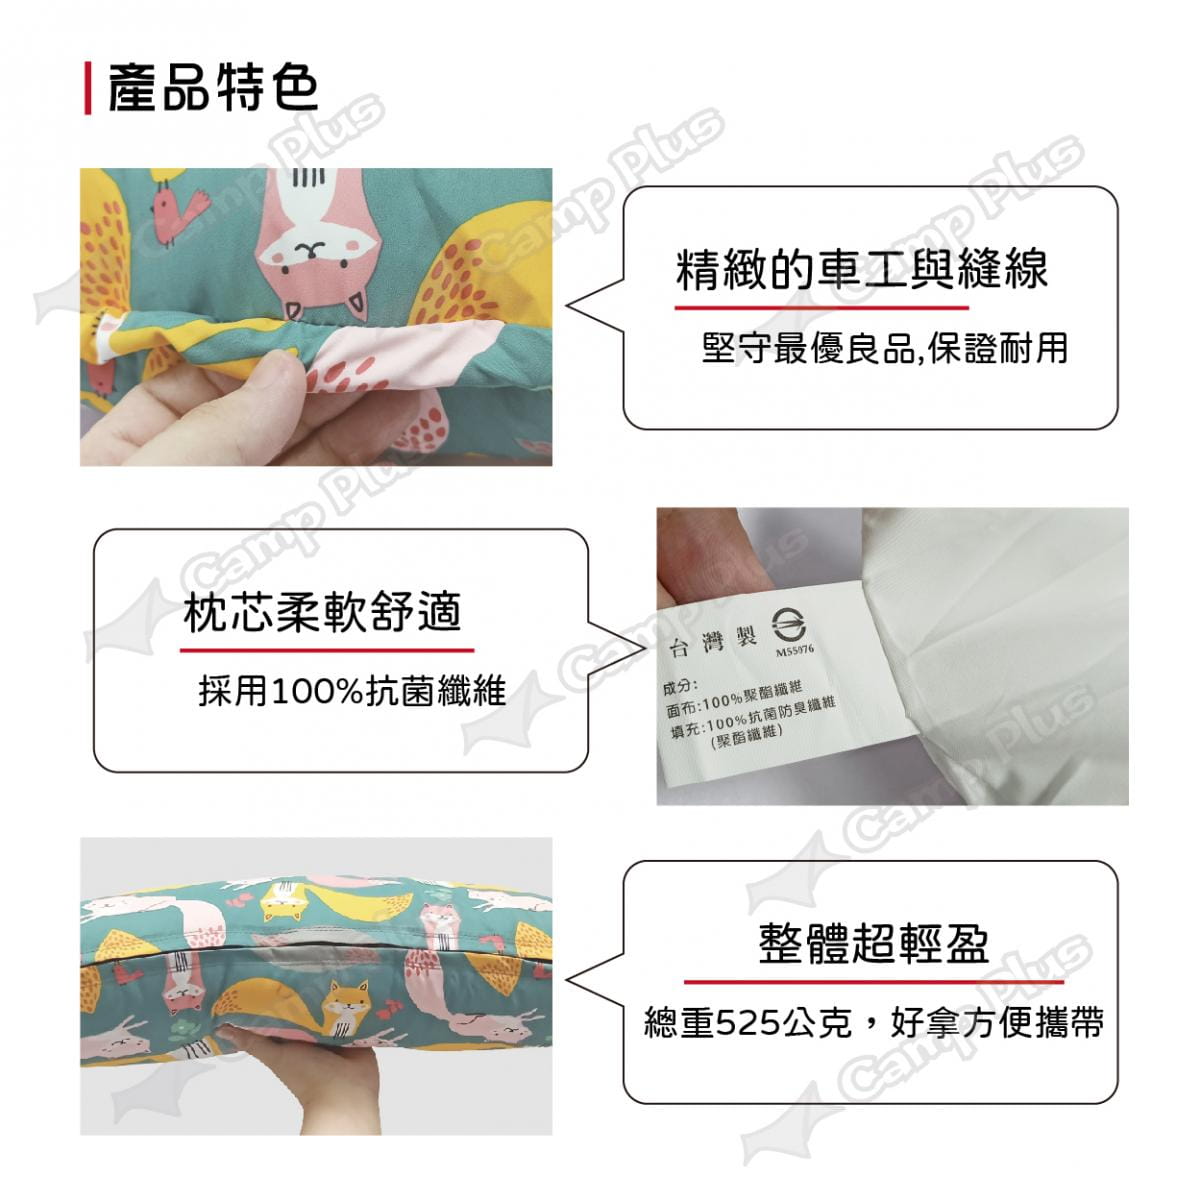 【wildfun野放】專利可調式功能枕頭 (悠遊戶外) 4